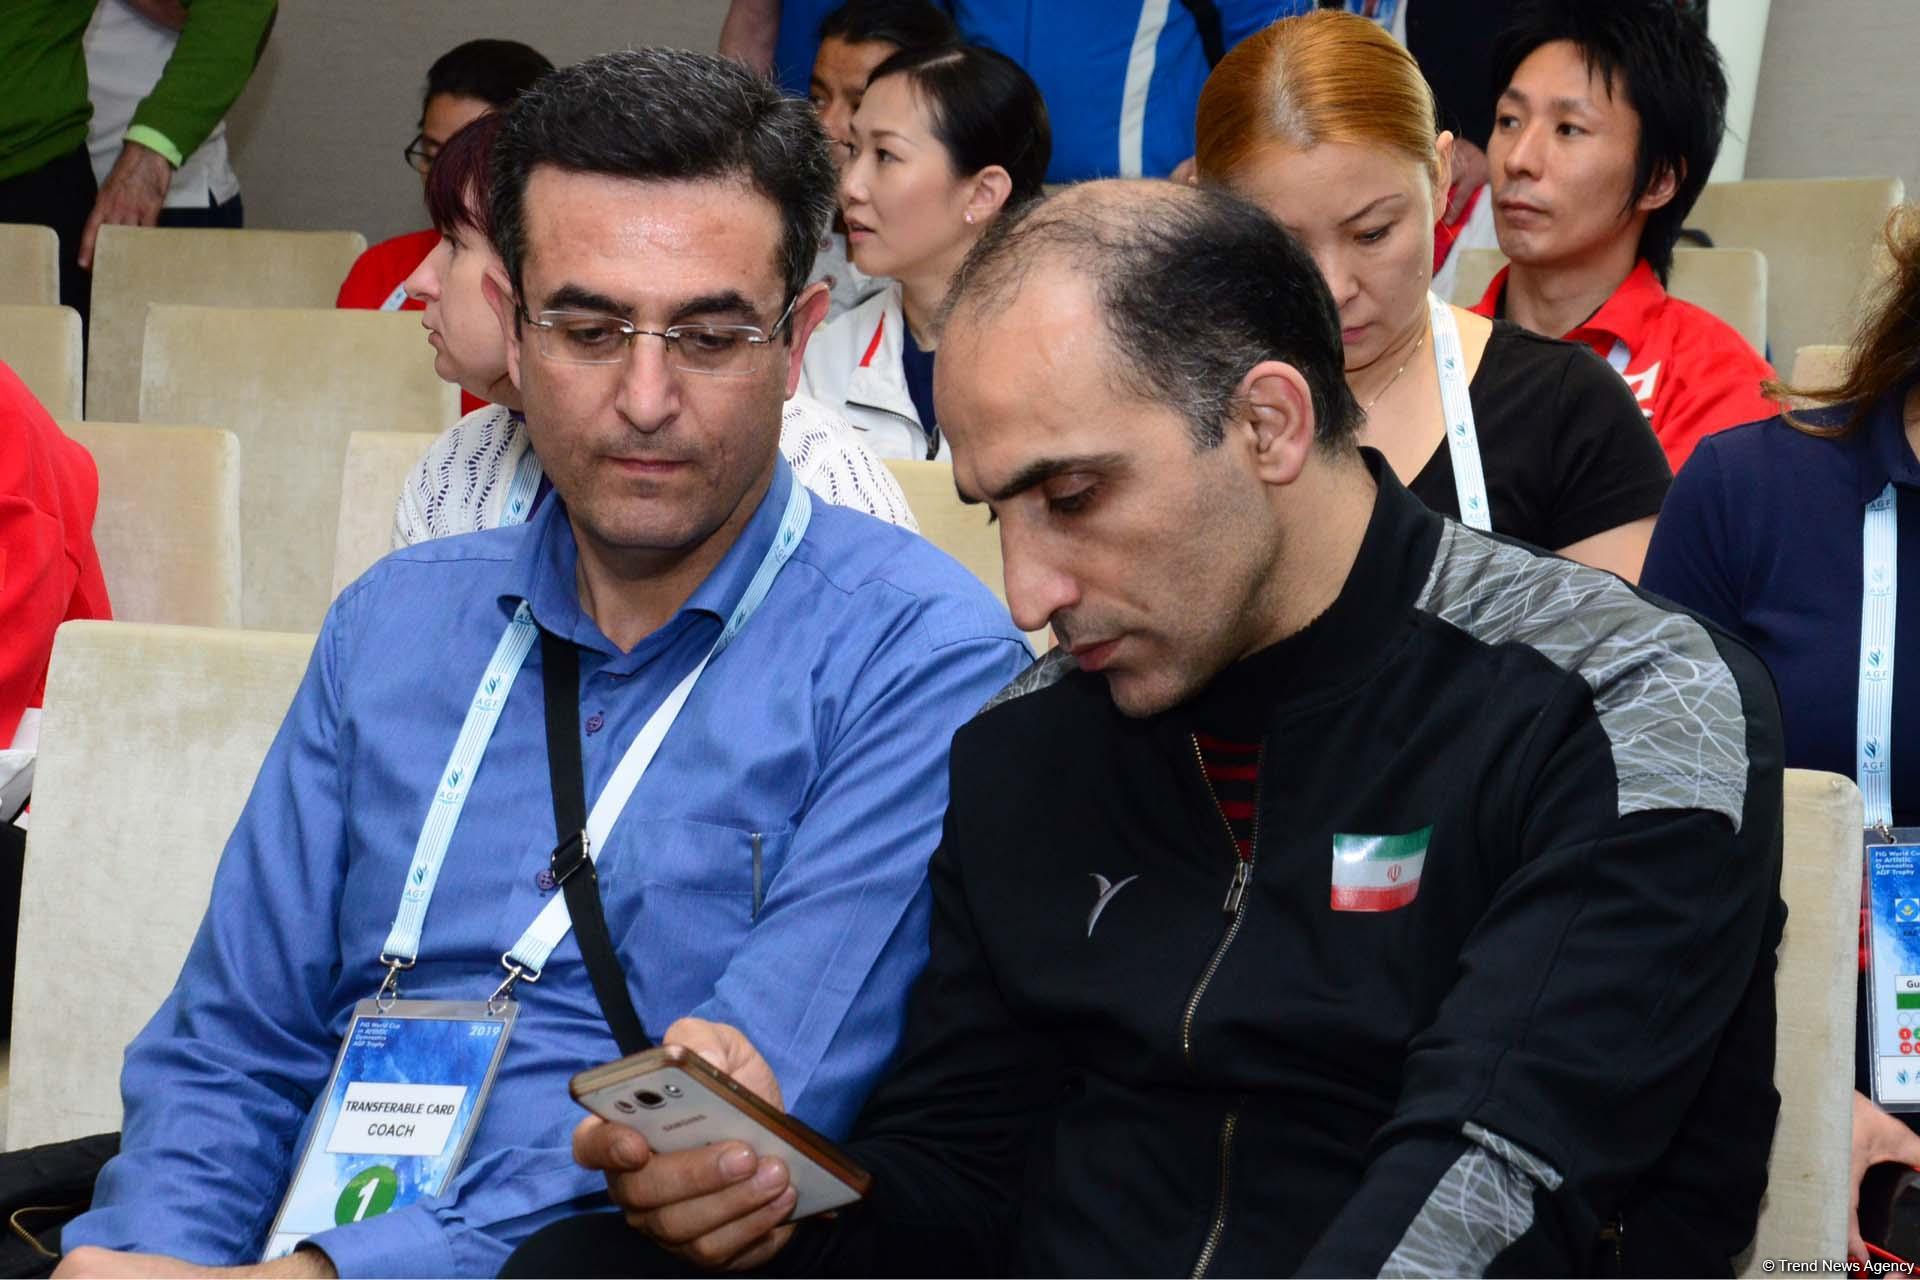 В Баку состоялась жеребьевка Кубка мира по спортивной гимнастике (ФОТО)